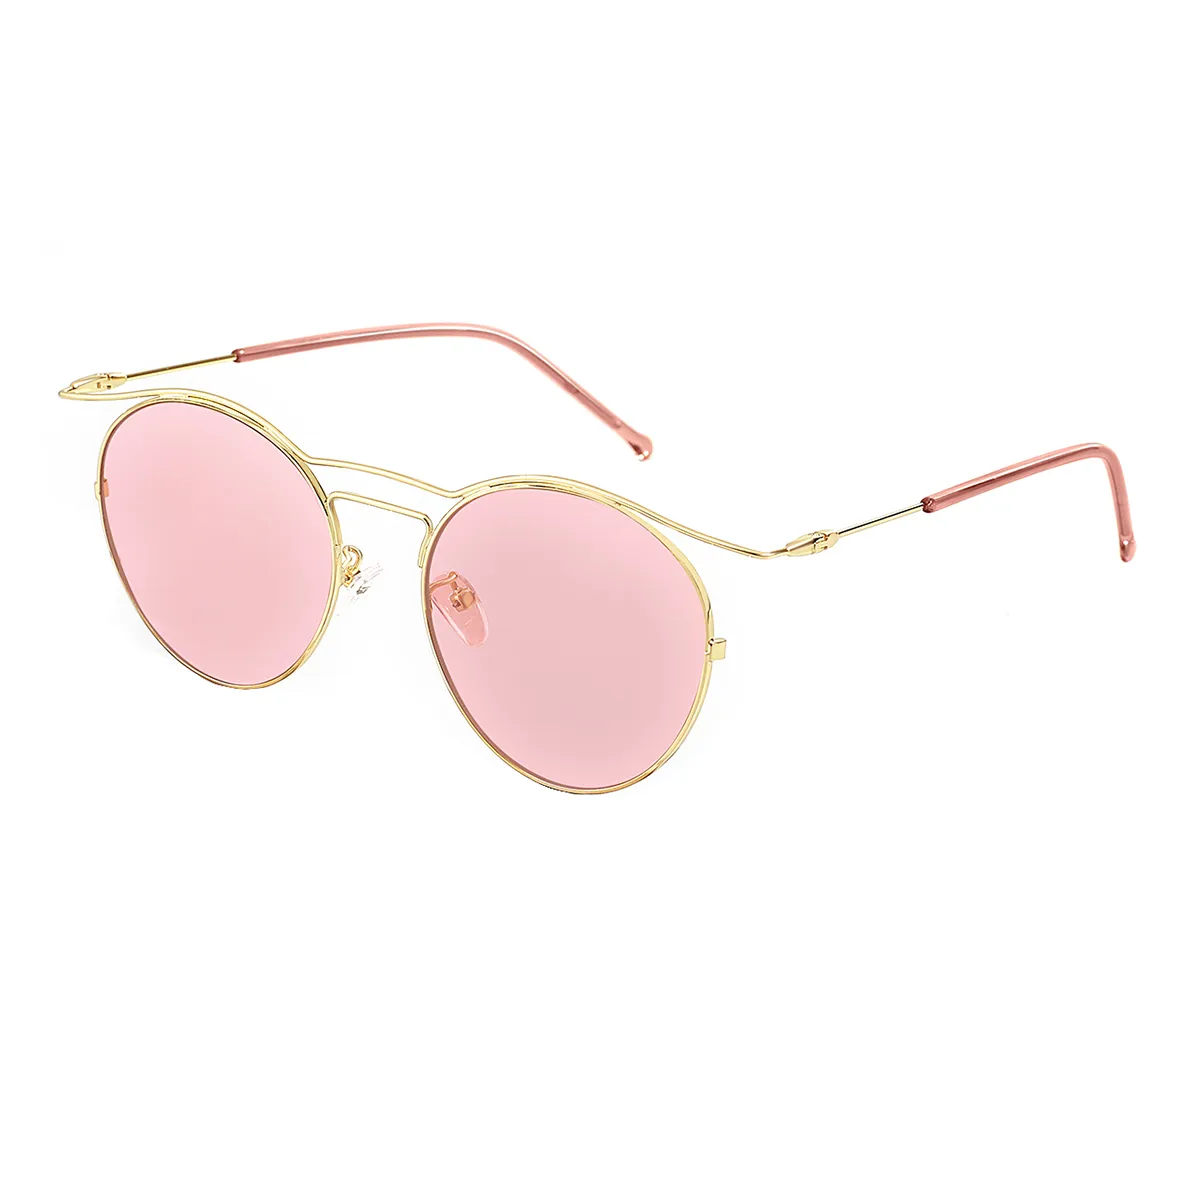 Inger - Aviator Gold/3 Sunglasses for Women